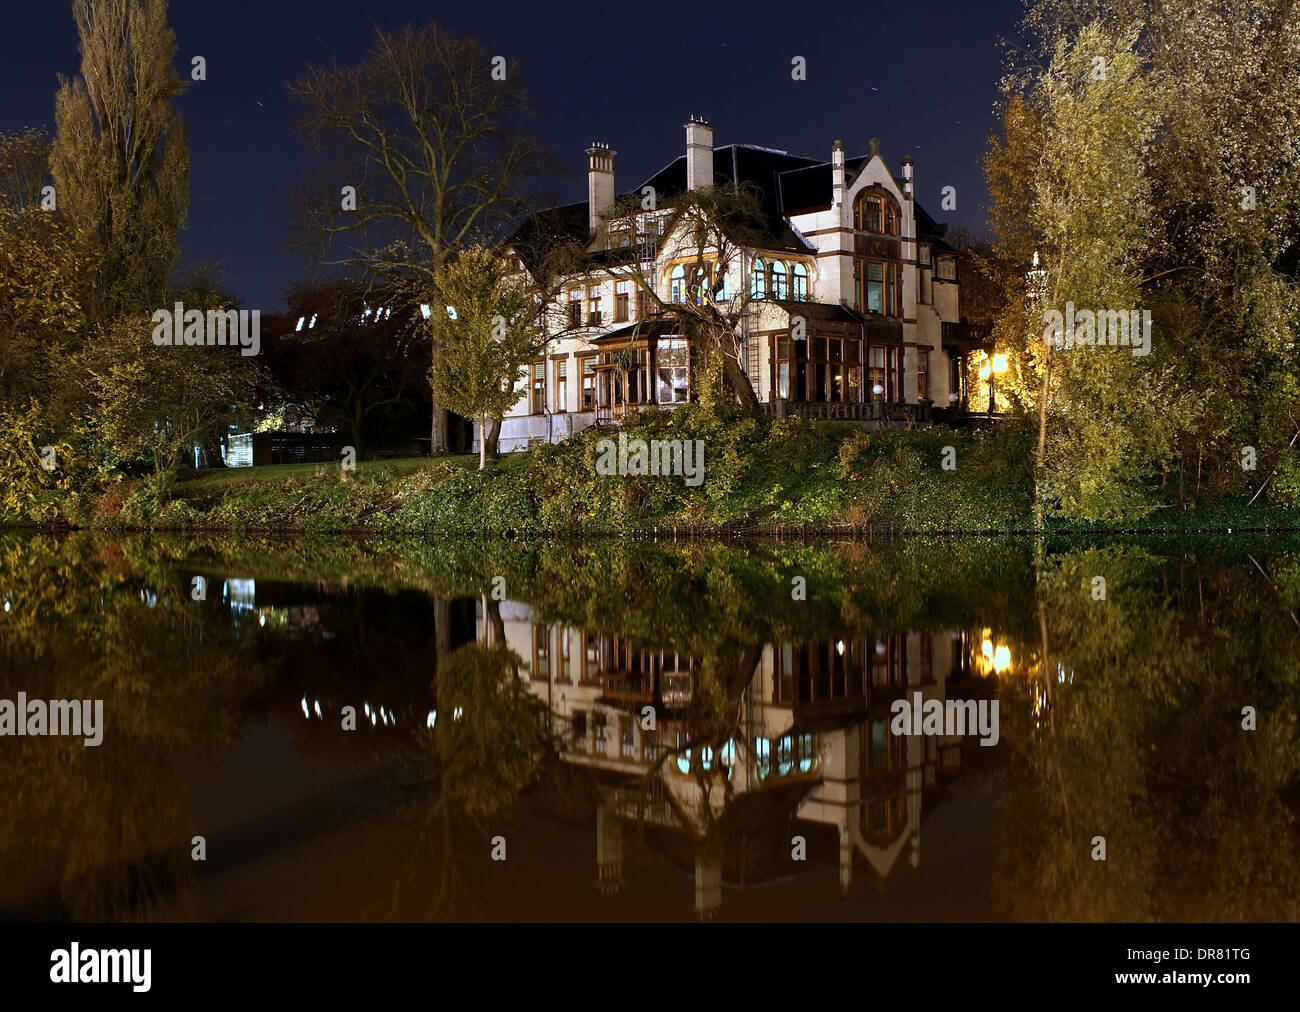 Hôtel particulier de style Jugendstil monumentale 'Huize Tavenier' à Groningen par nuit Banque D'Images